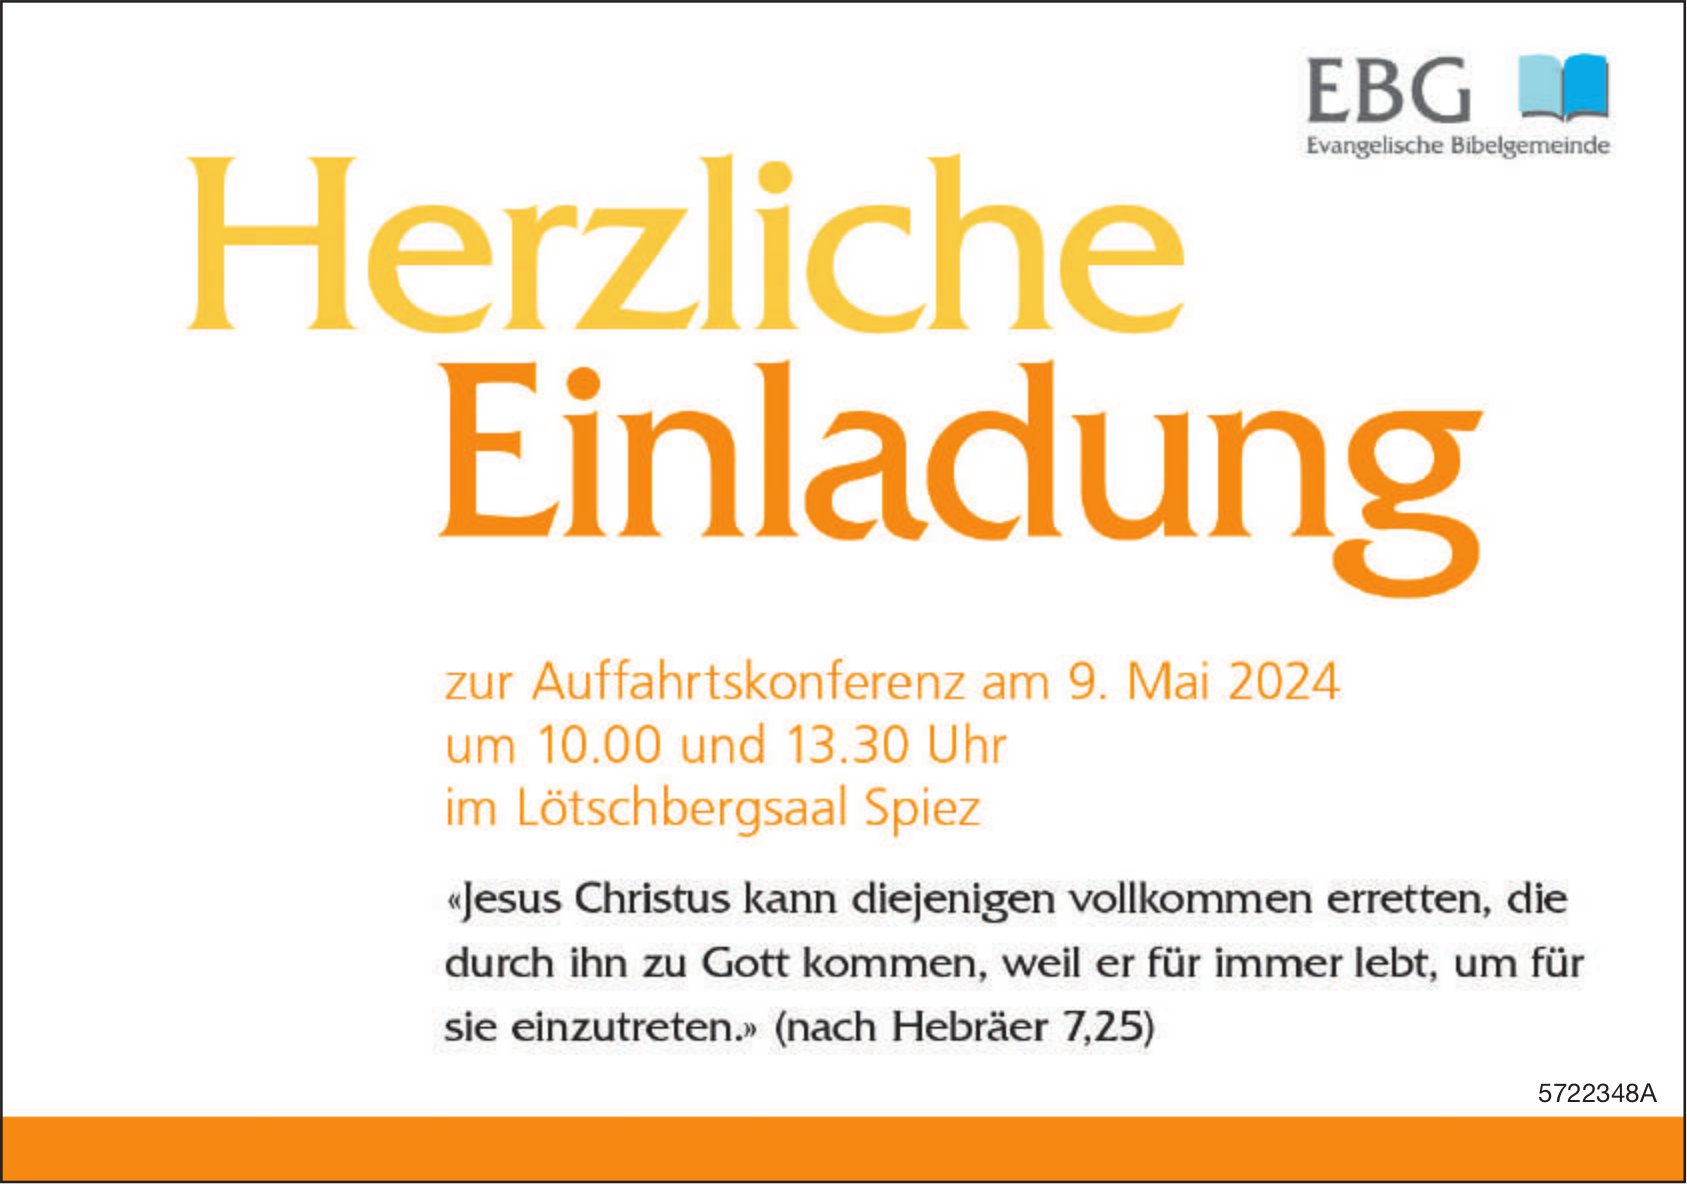 Herzliche Einladung zur Auffahrtskonferenz, 9. Mai, EBG, Evangelische Bibelgemeinde